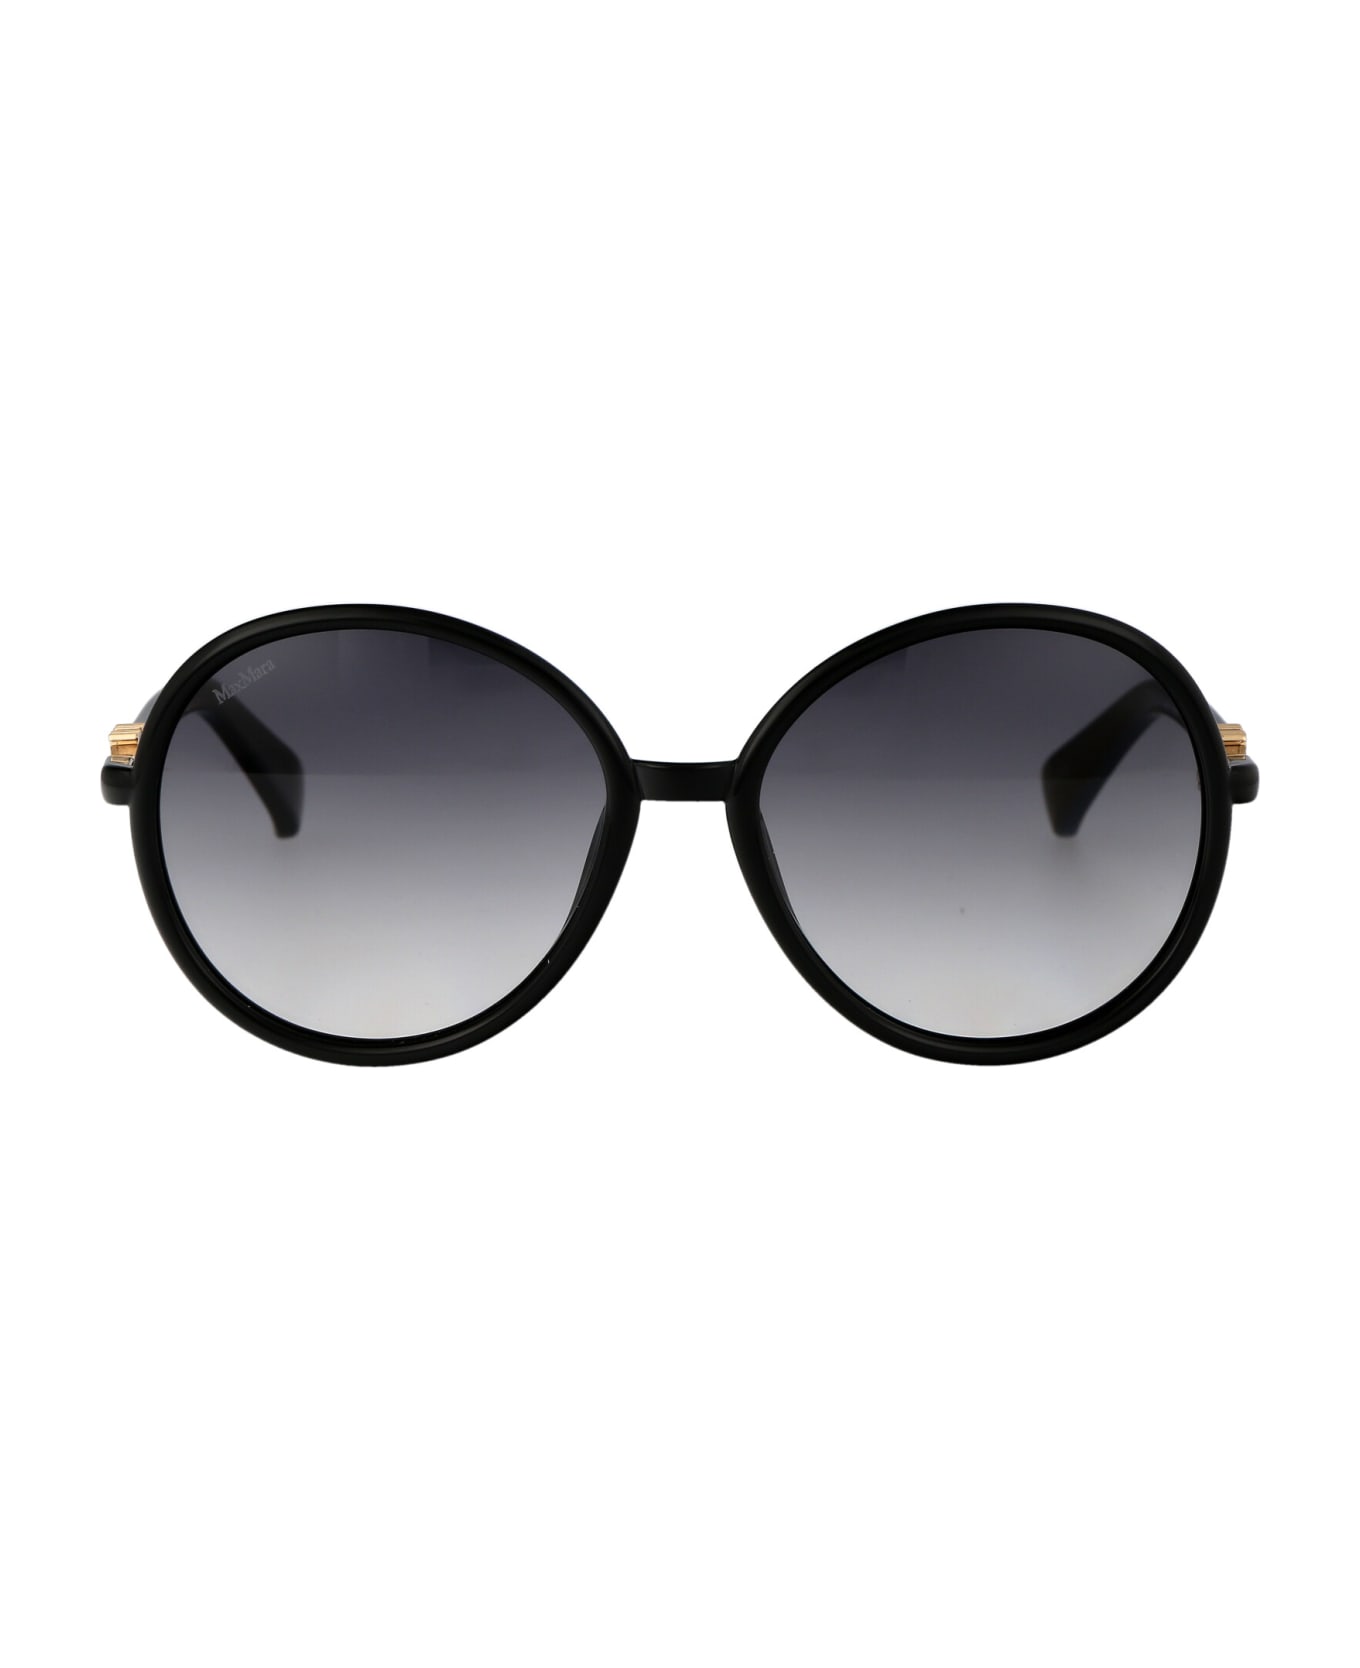 Max Mara Emme15 Sunglasses - 01B Nero Lucido/Fumo Grad